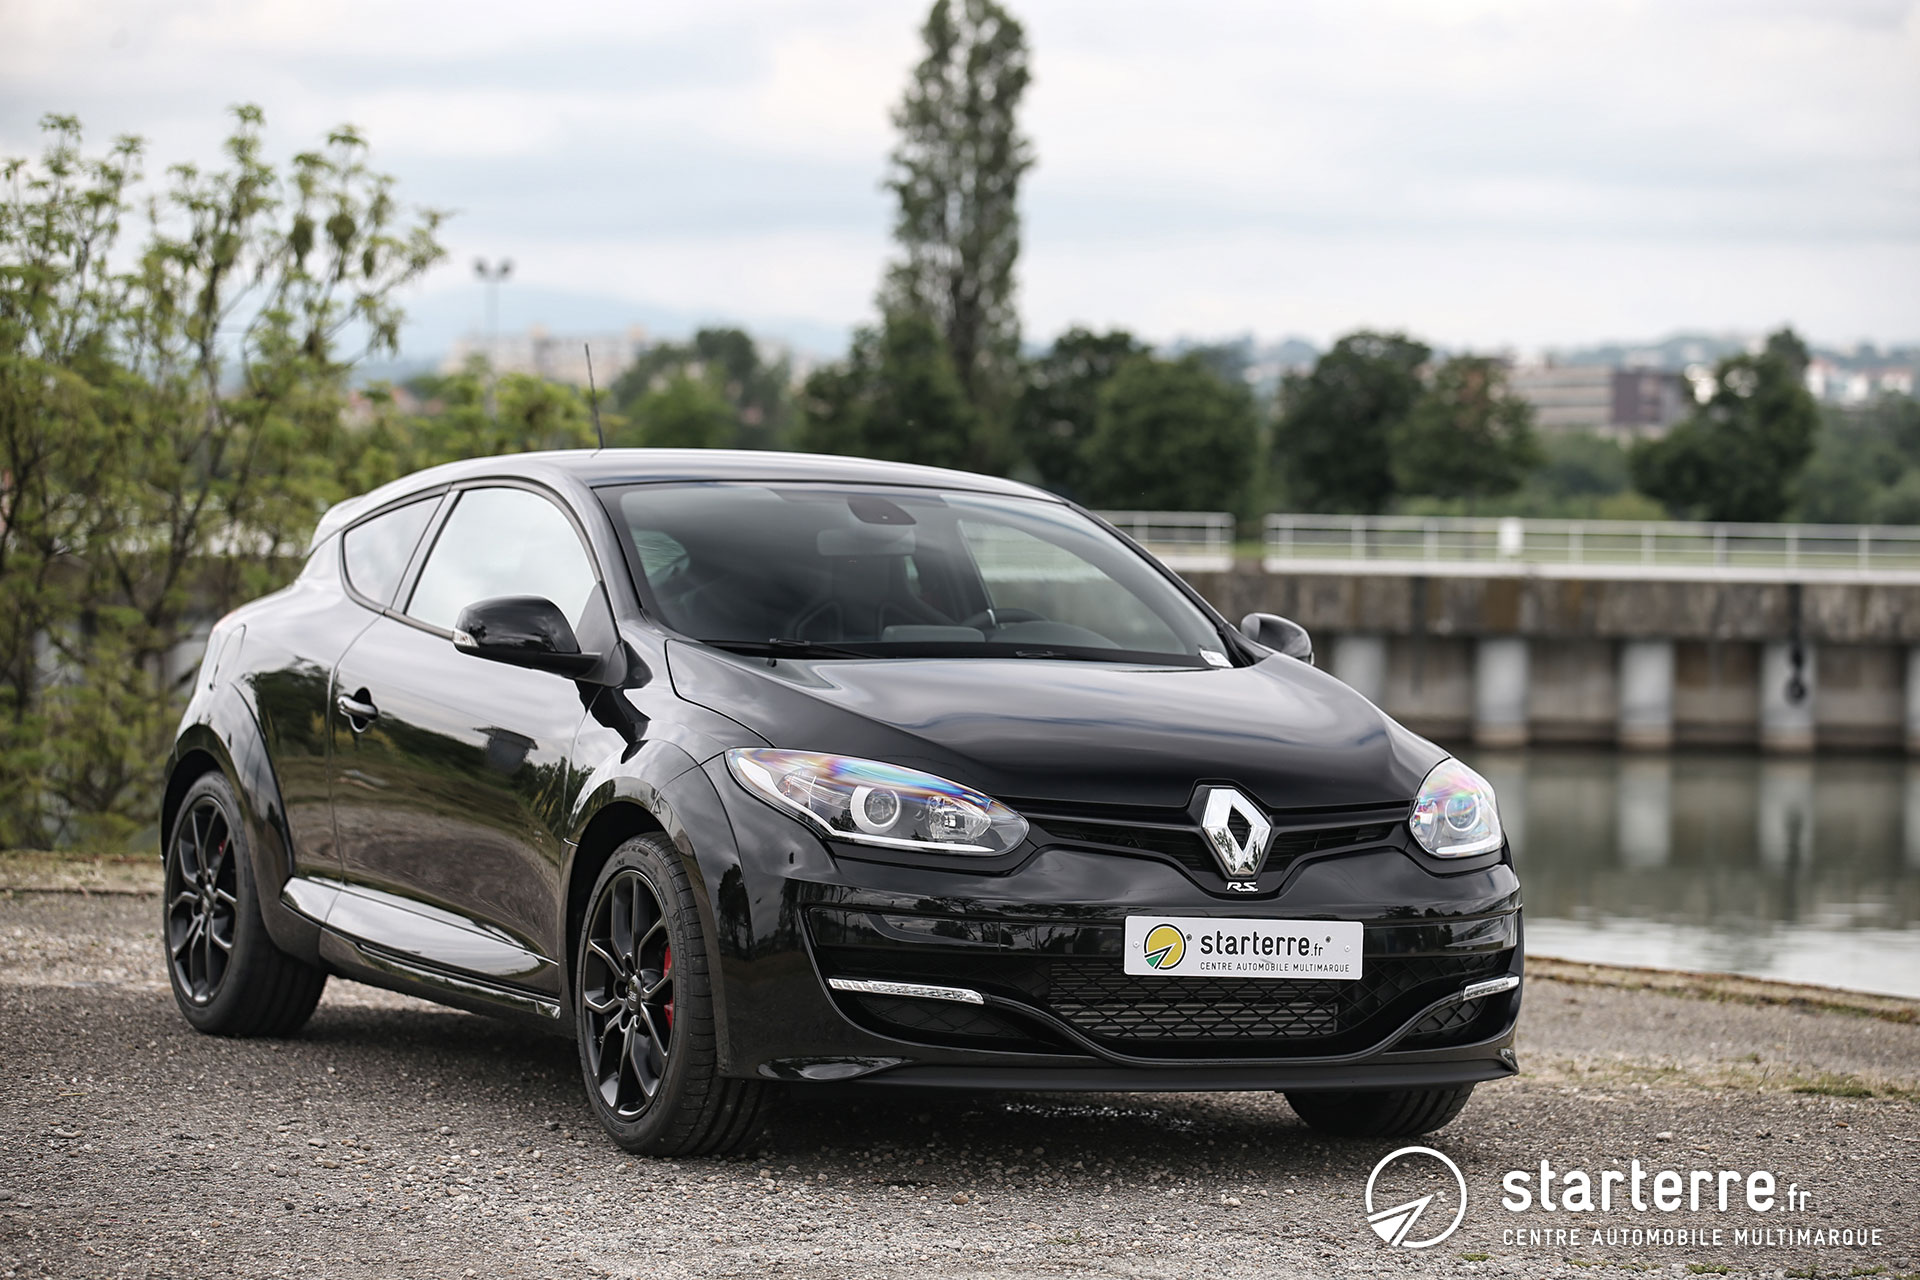 https://mag.starterre.fr/wp-content/uploads/2016/07/Renault-Megane-III-RS-02.jpg